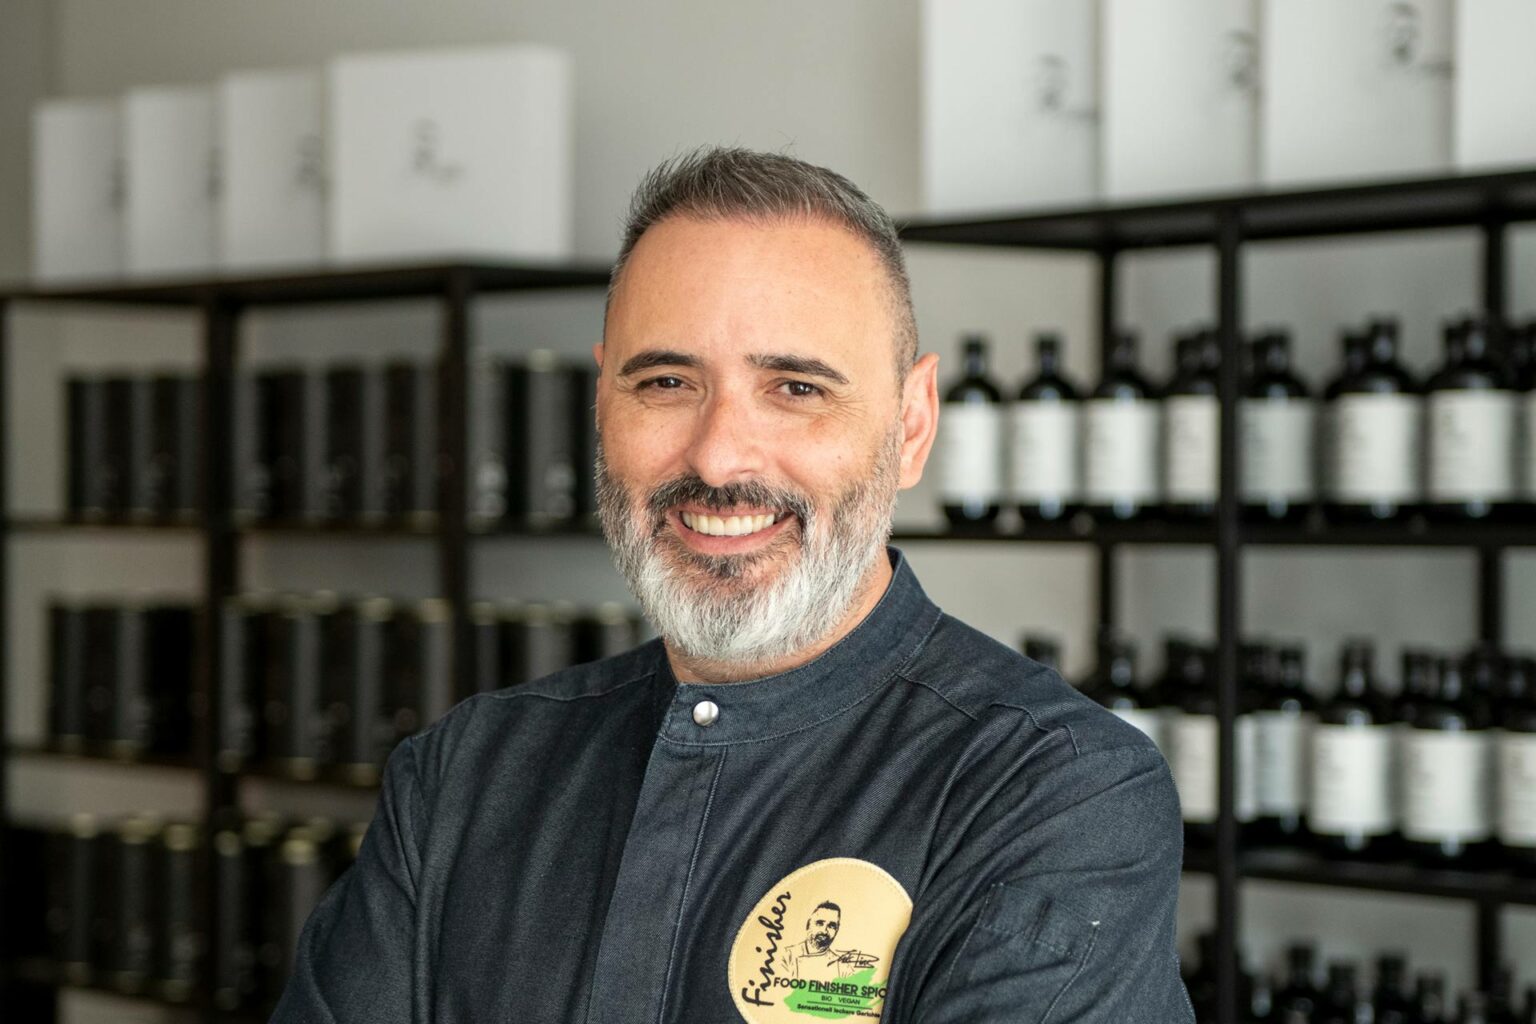 Luis Dias, der Inhaber von Casa Luis Dias, steht stolz vor zwei Regalen voller Gewürzpasten, Geschenkboxen und Olivenölen in seinem Laden.